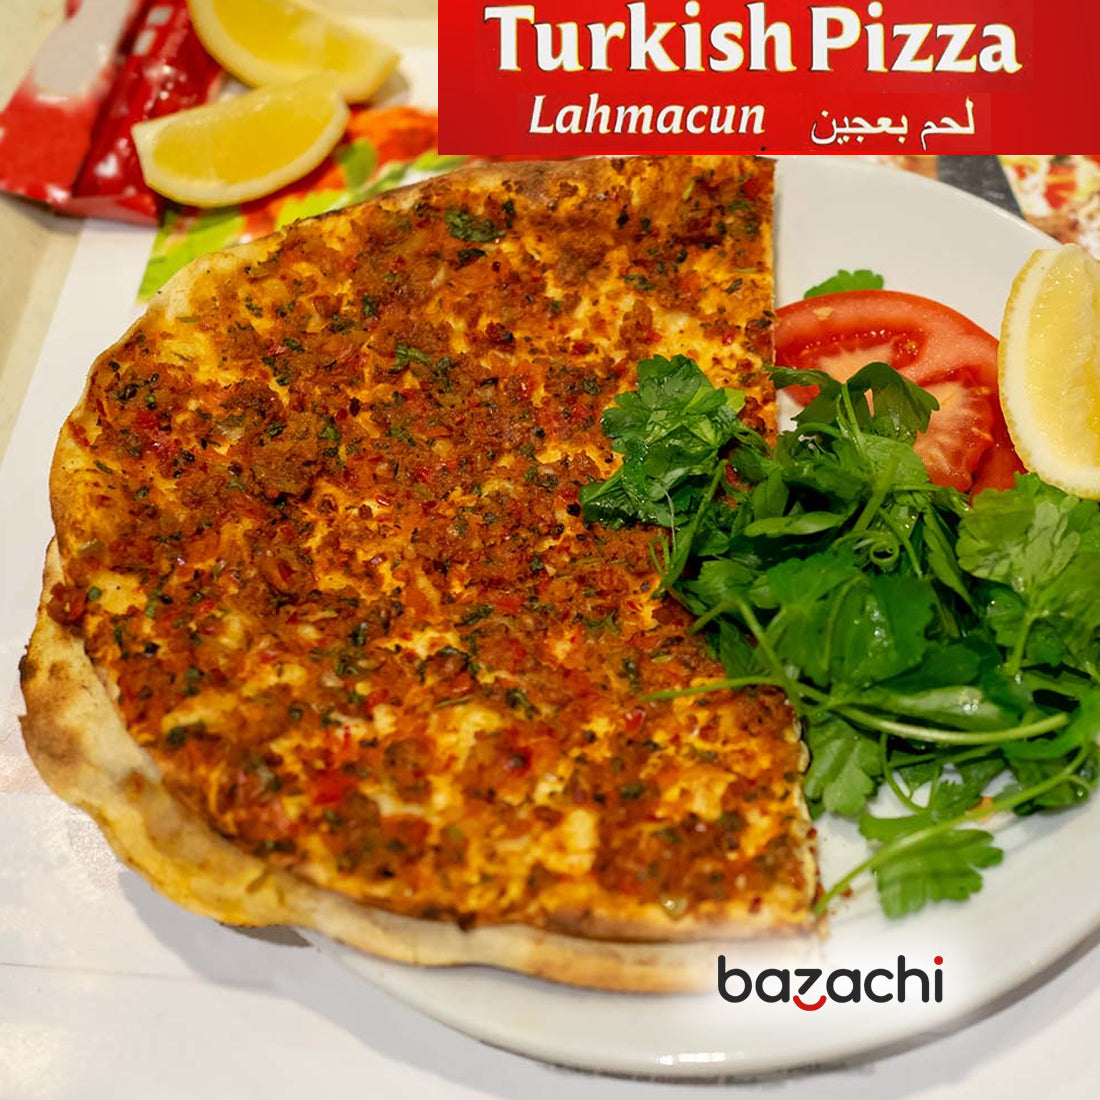 Endo's Lahmacun Turkish Pizza 10x200g  - Frozen